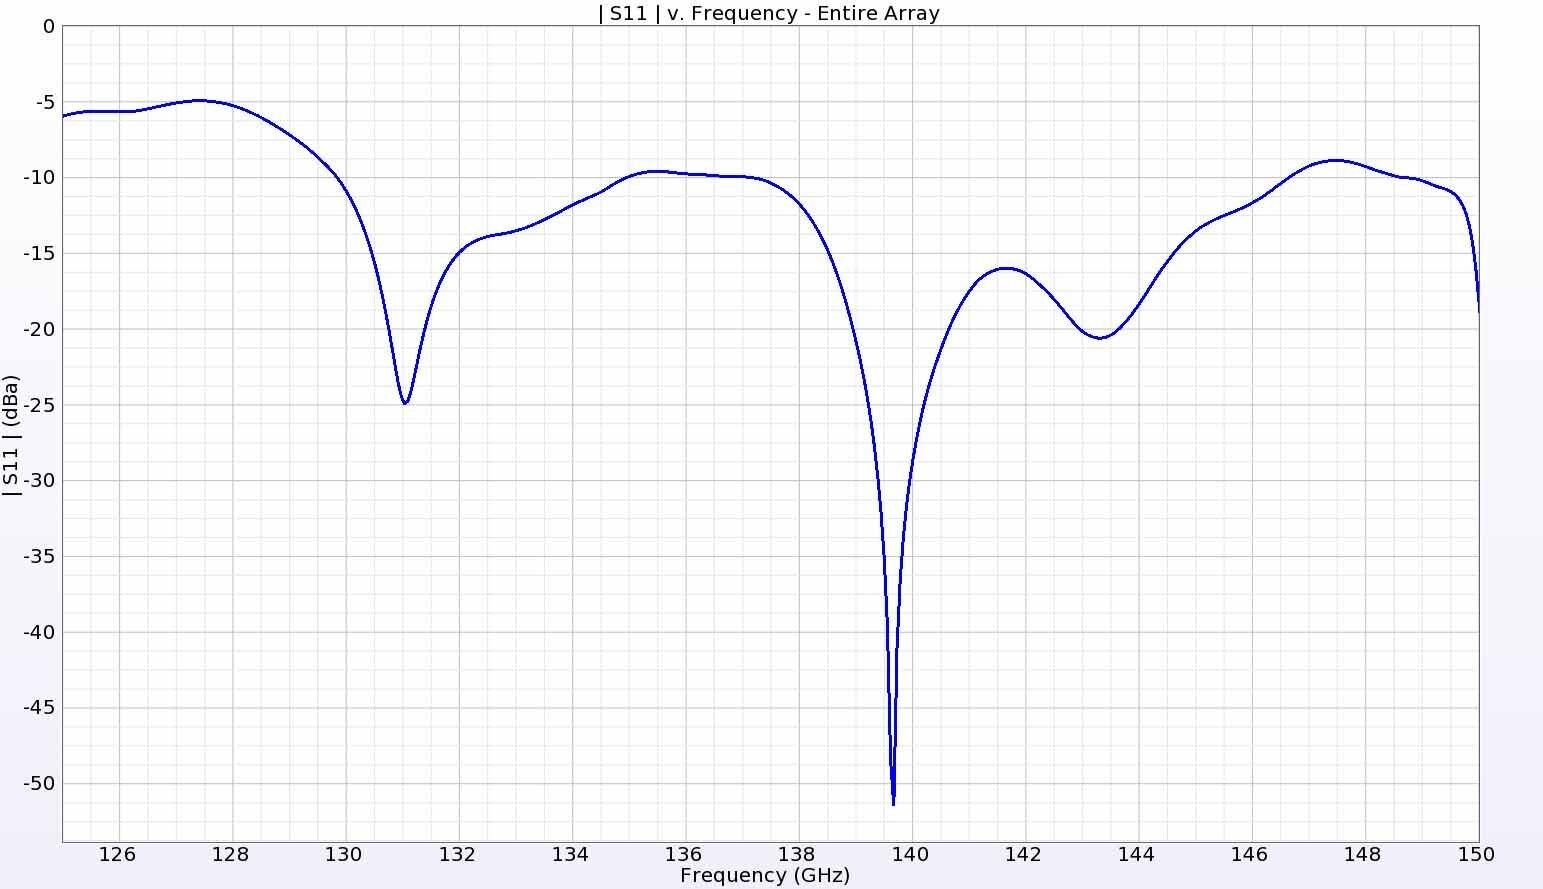 Abbildung 18: Die Rückflussdämpfung für das gesamte Array liegt von 130 bis 146 GHz meist unter -10 dB.